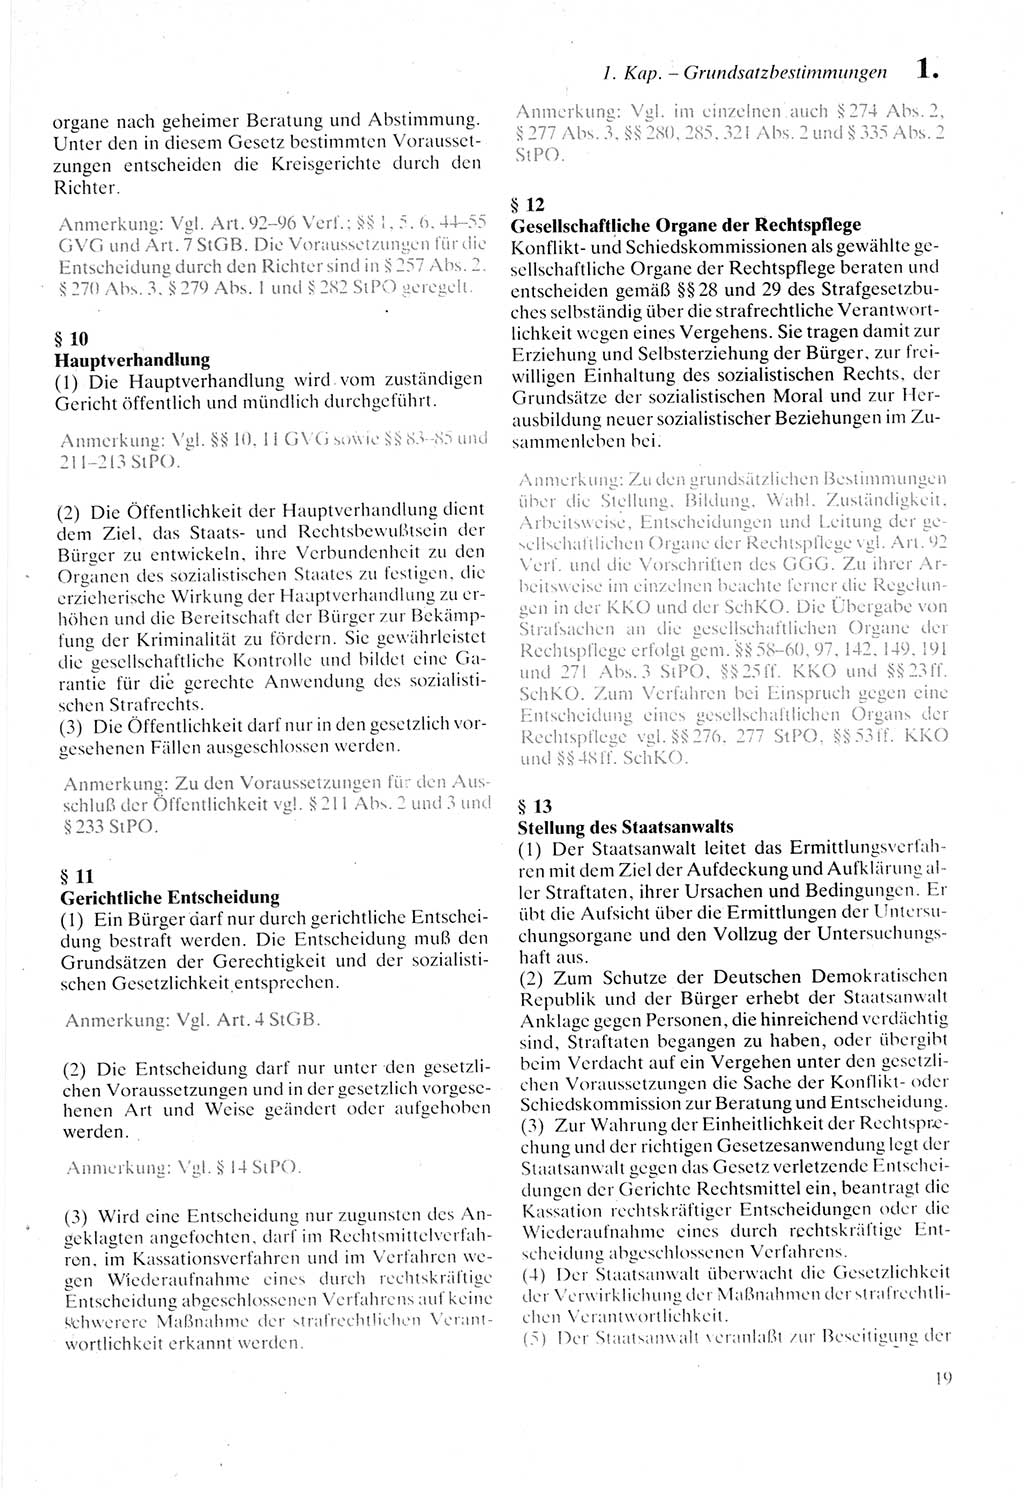 Strafprozeßordnung (StPO) der Deutschen Demokratischen Republik (DDR) sowie angrenzende Gesetze und Bestimmungen 1987, Seite 19 (StPO DDR Ges. Best. 1987, S. 19)